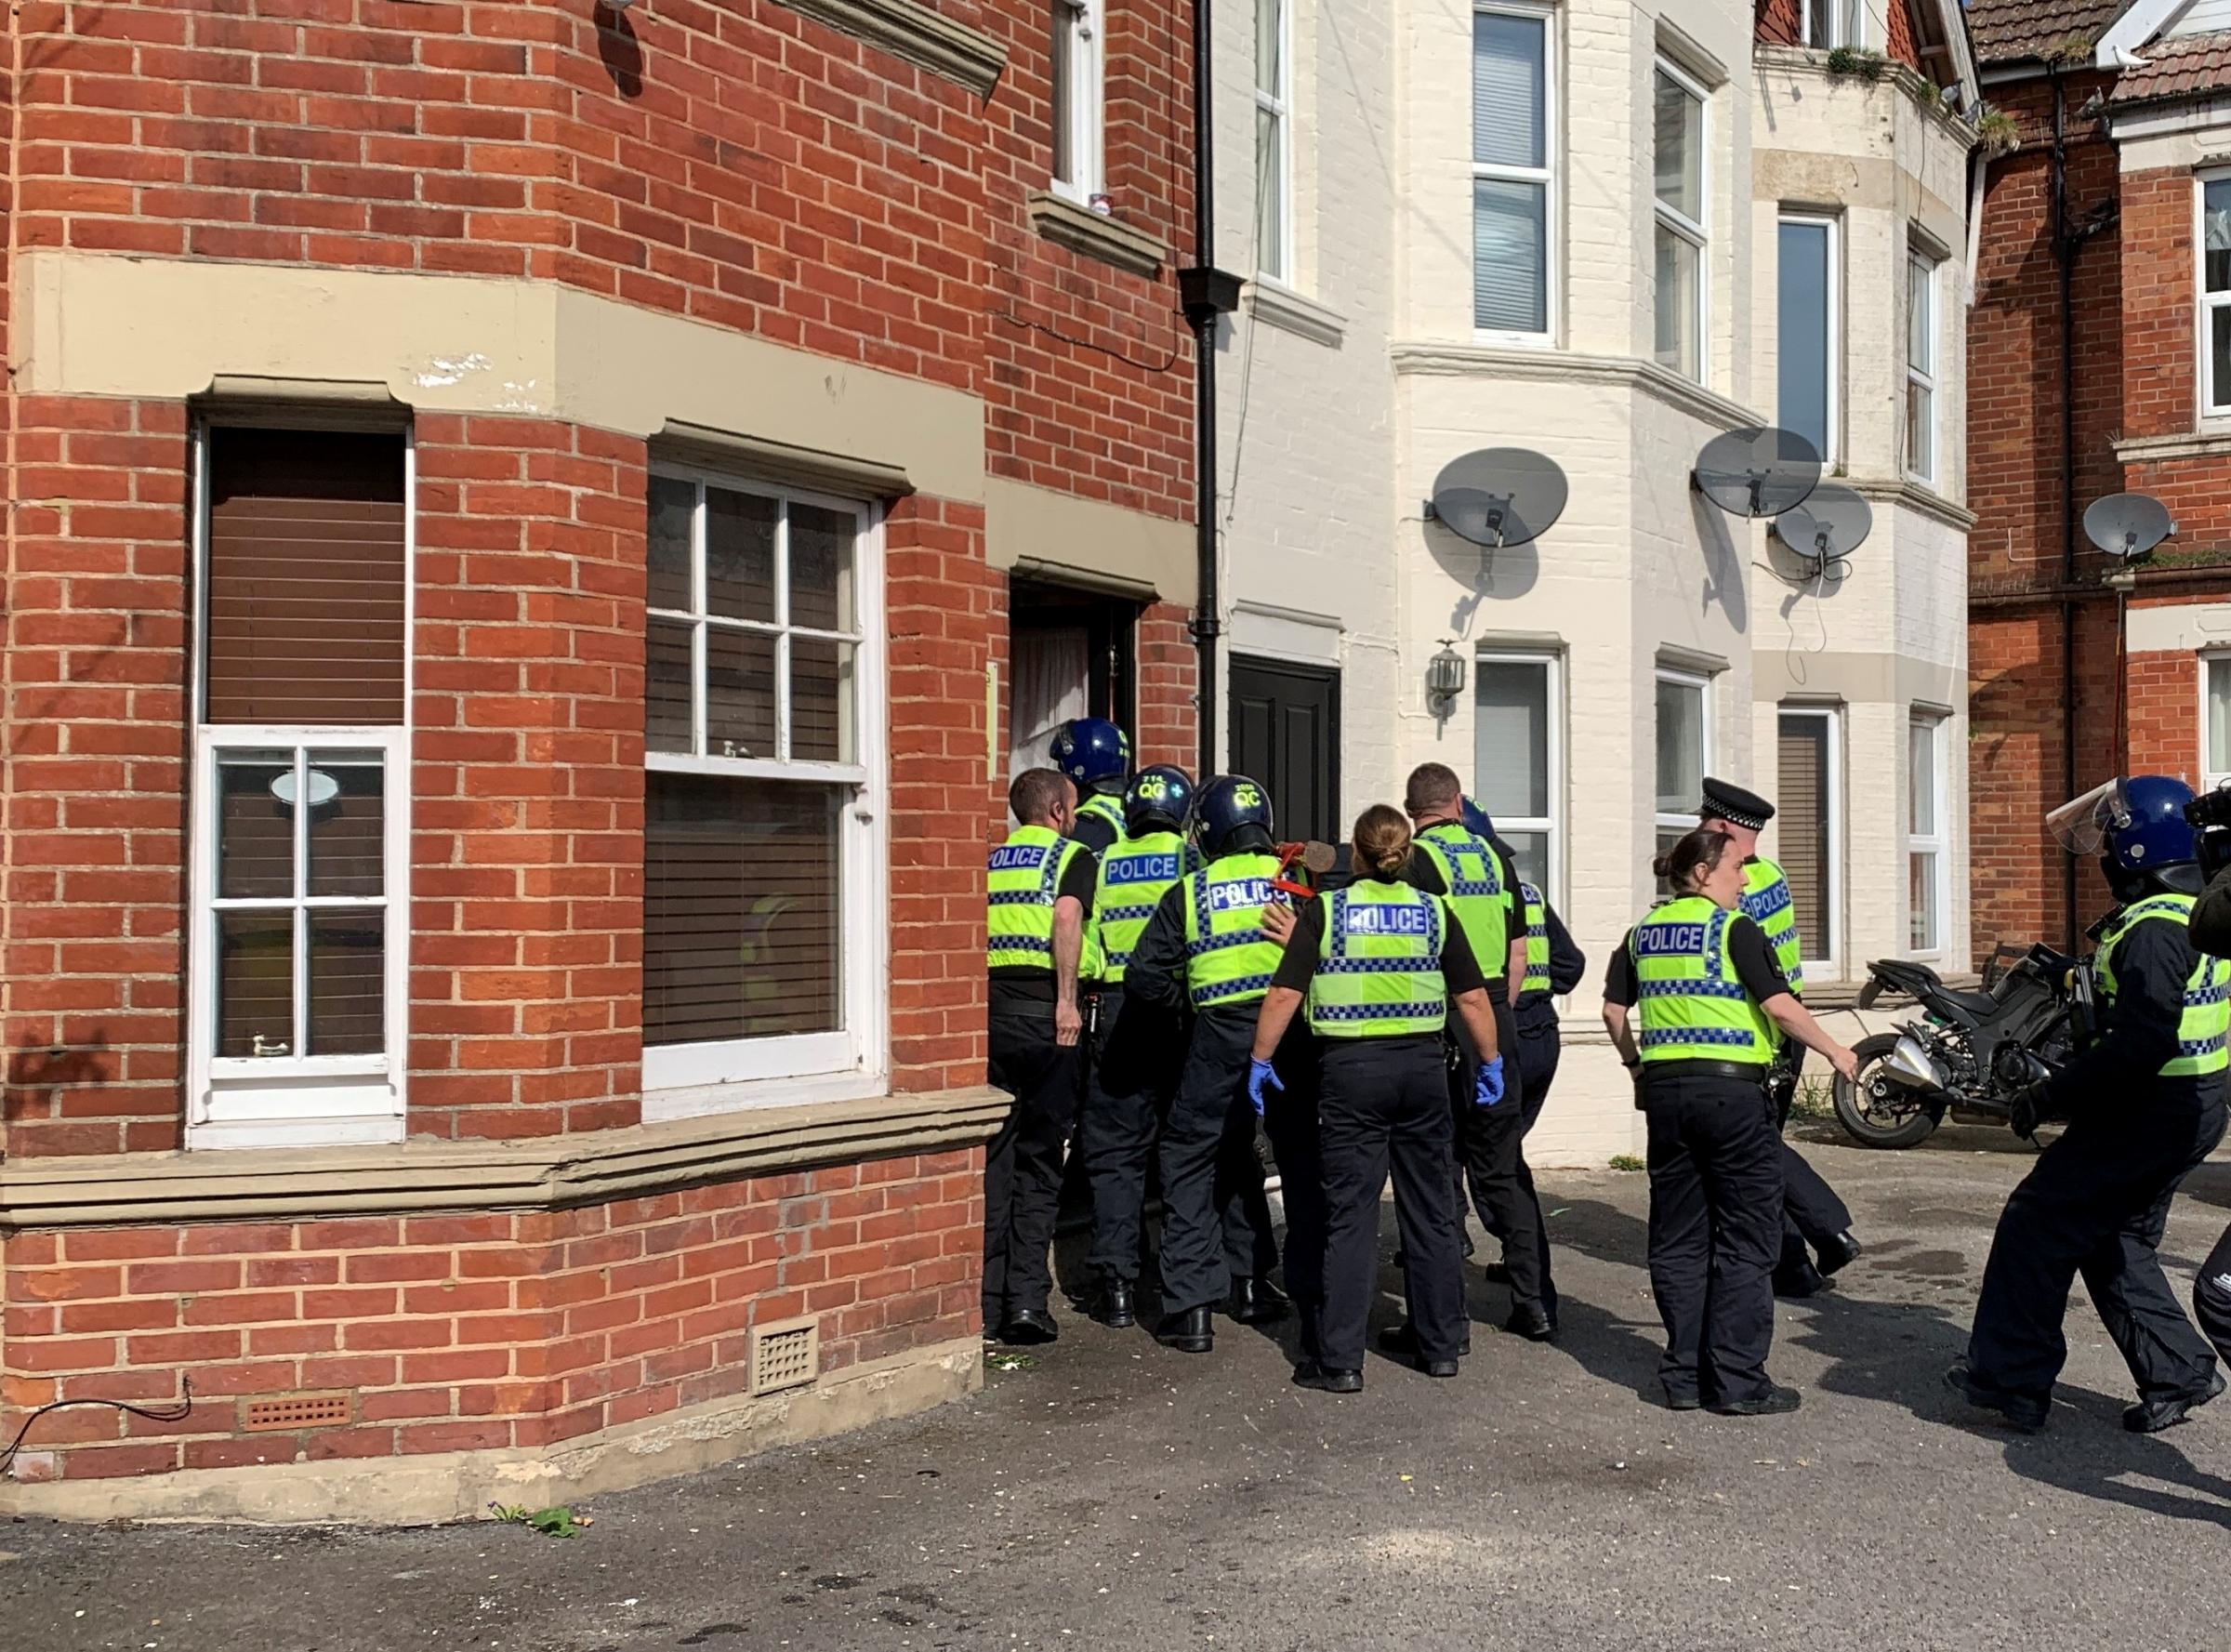 Die Polizei von Dorset sagt, sie arbeite hart daran, Substanzen von den Straßen von Boscombe zu entfernen